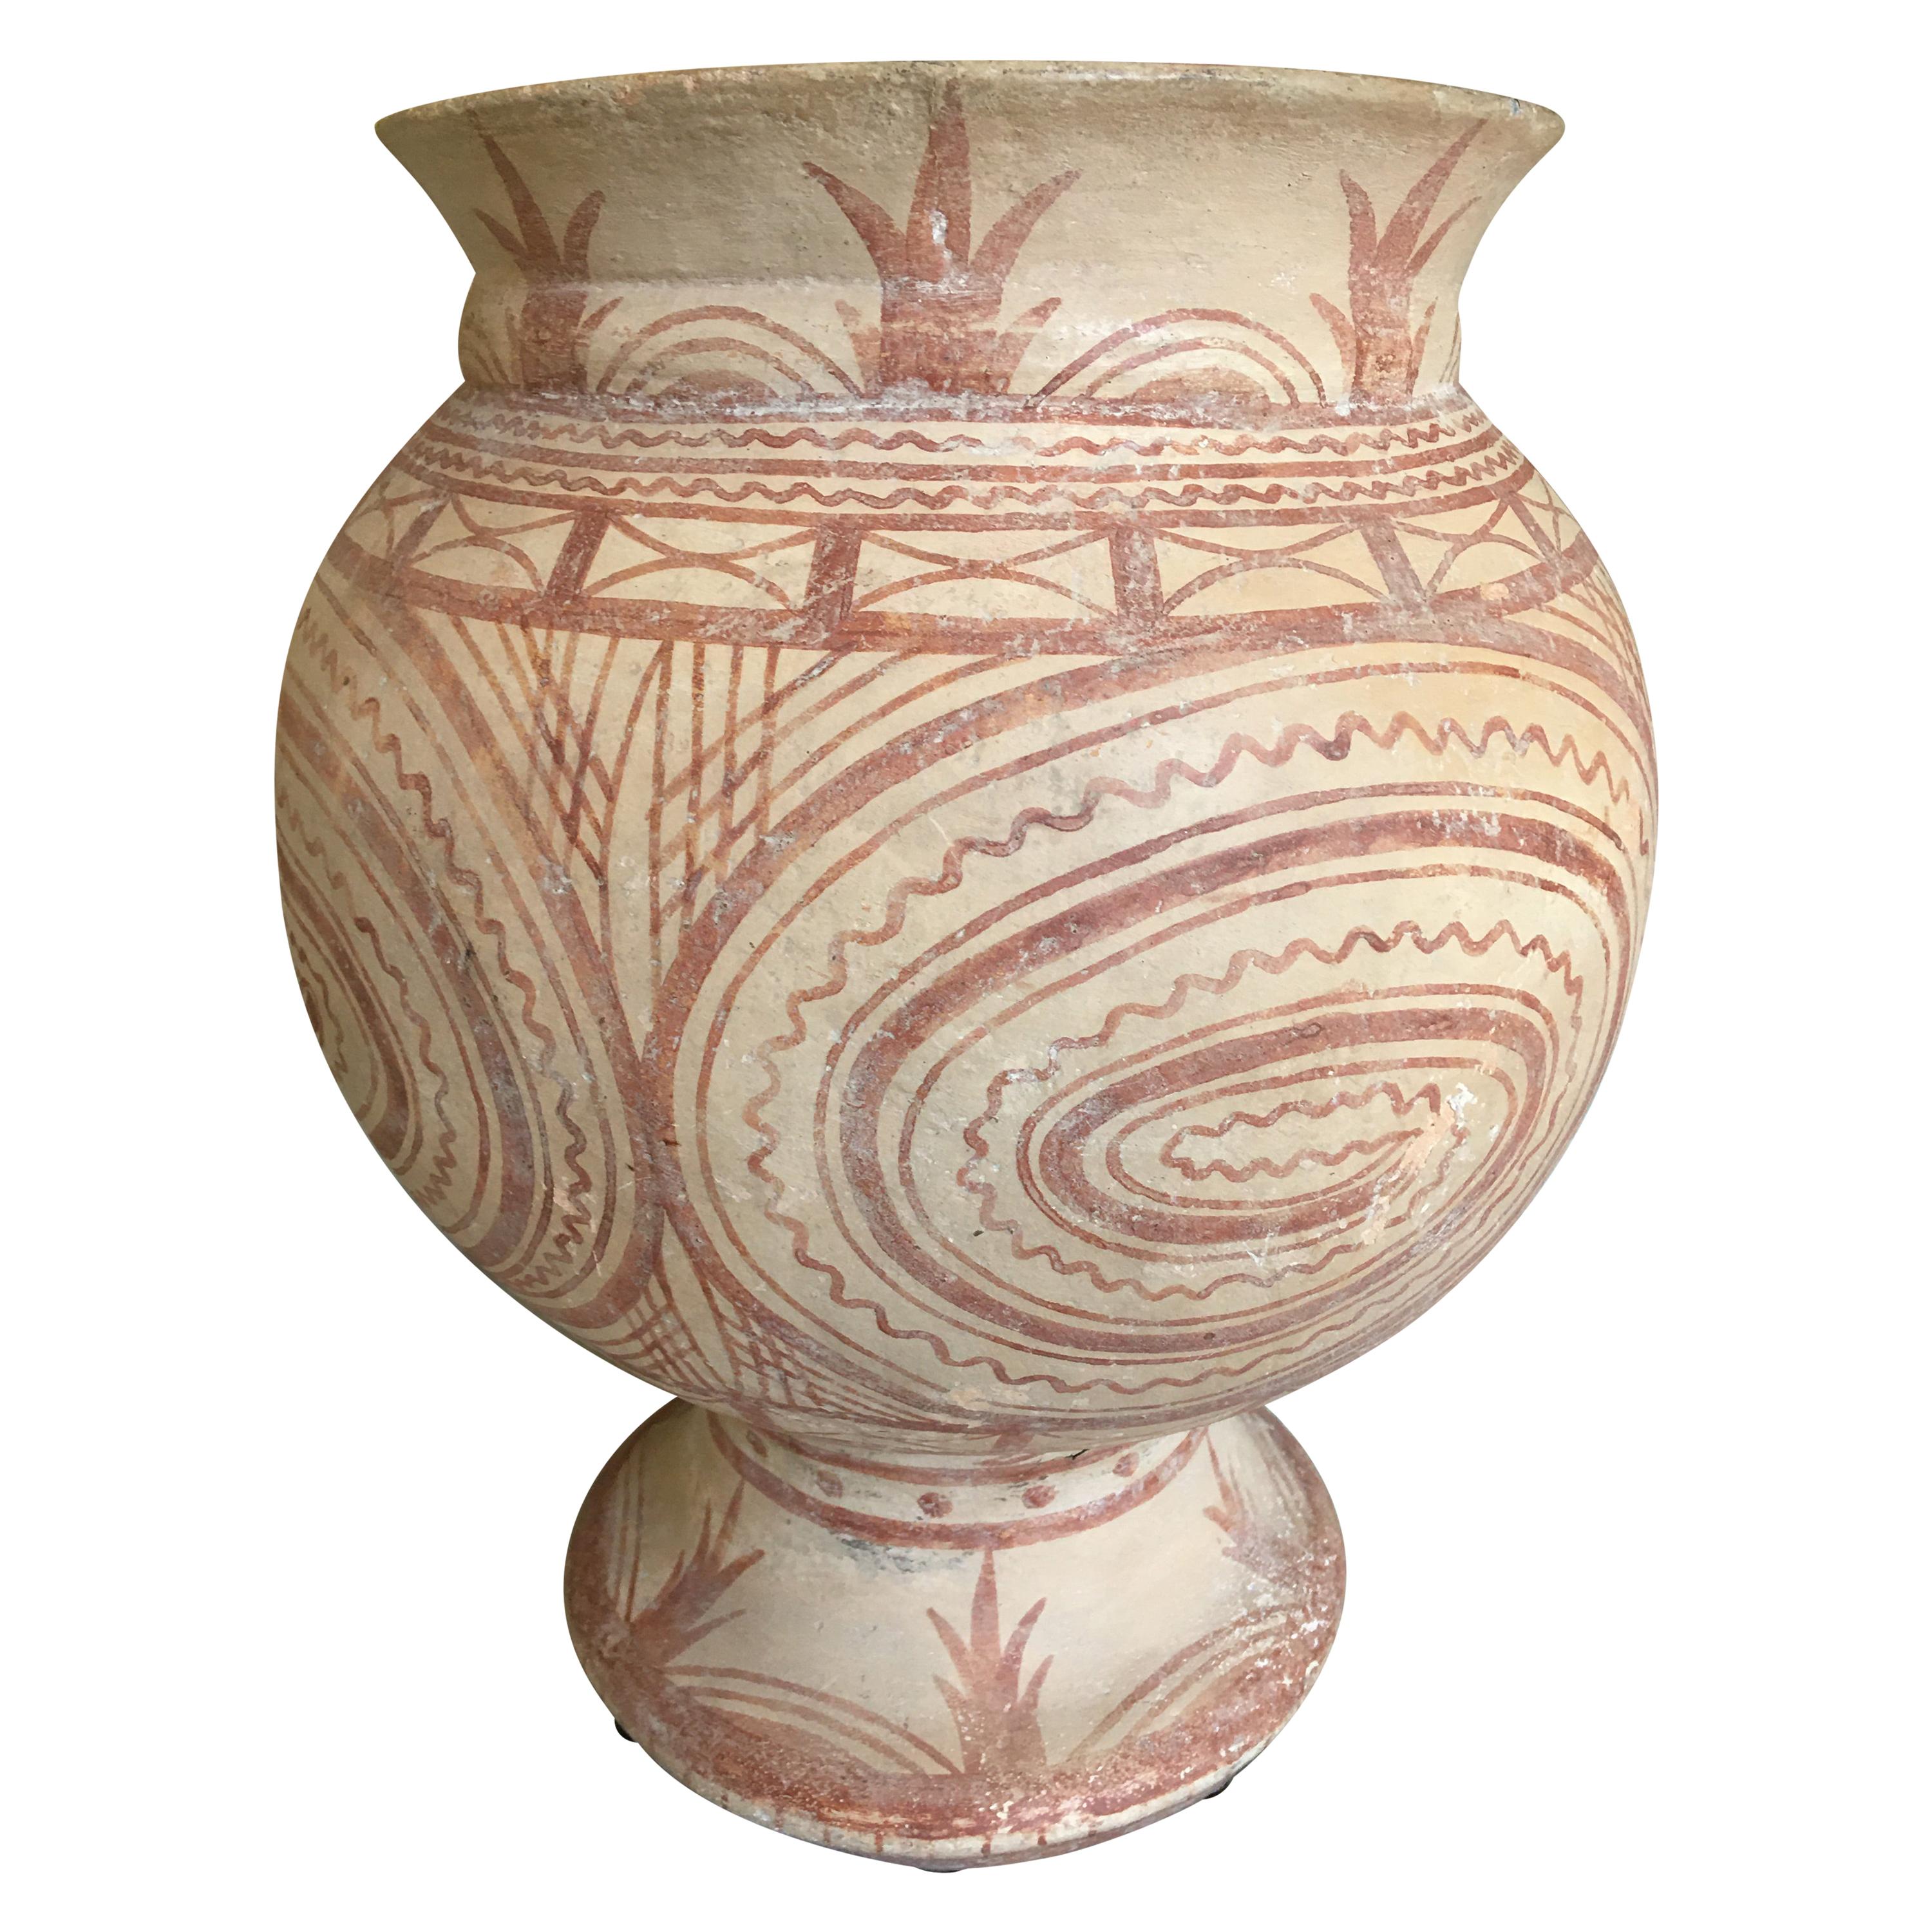 Thai Ancient Ban Chiang Painted Pottery Vessel, circa 300 BC